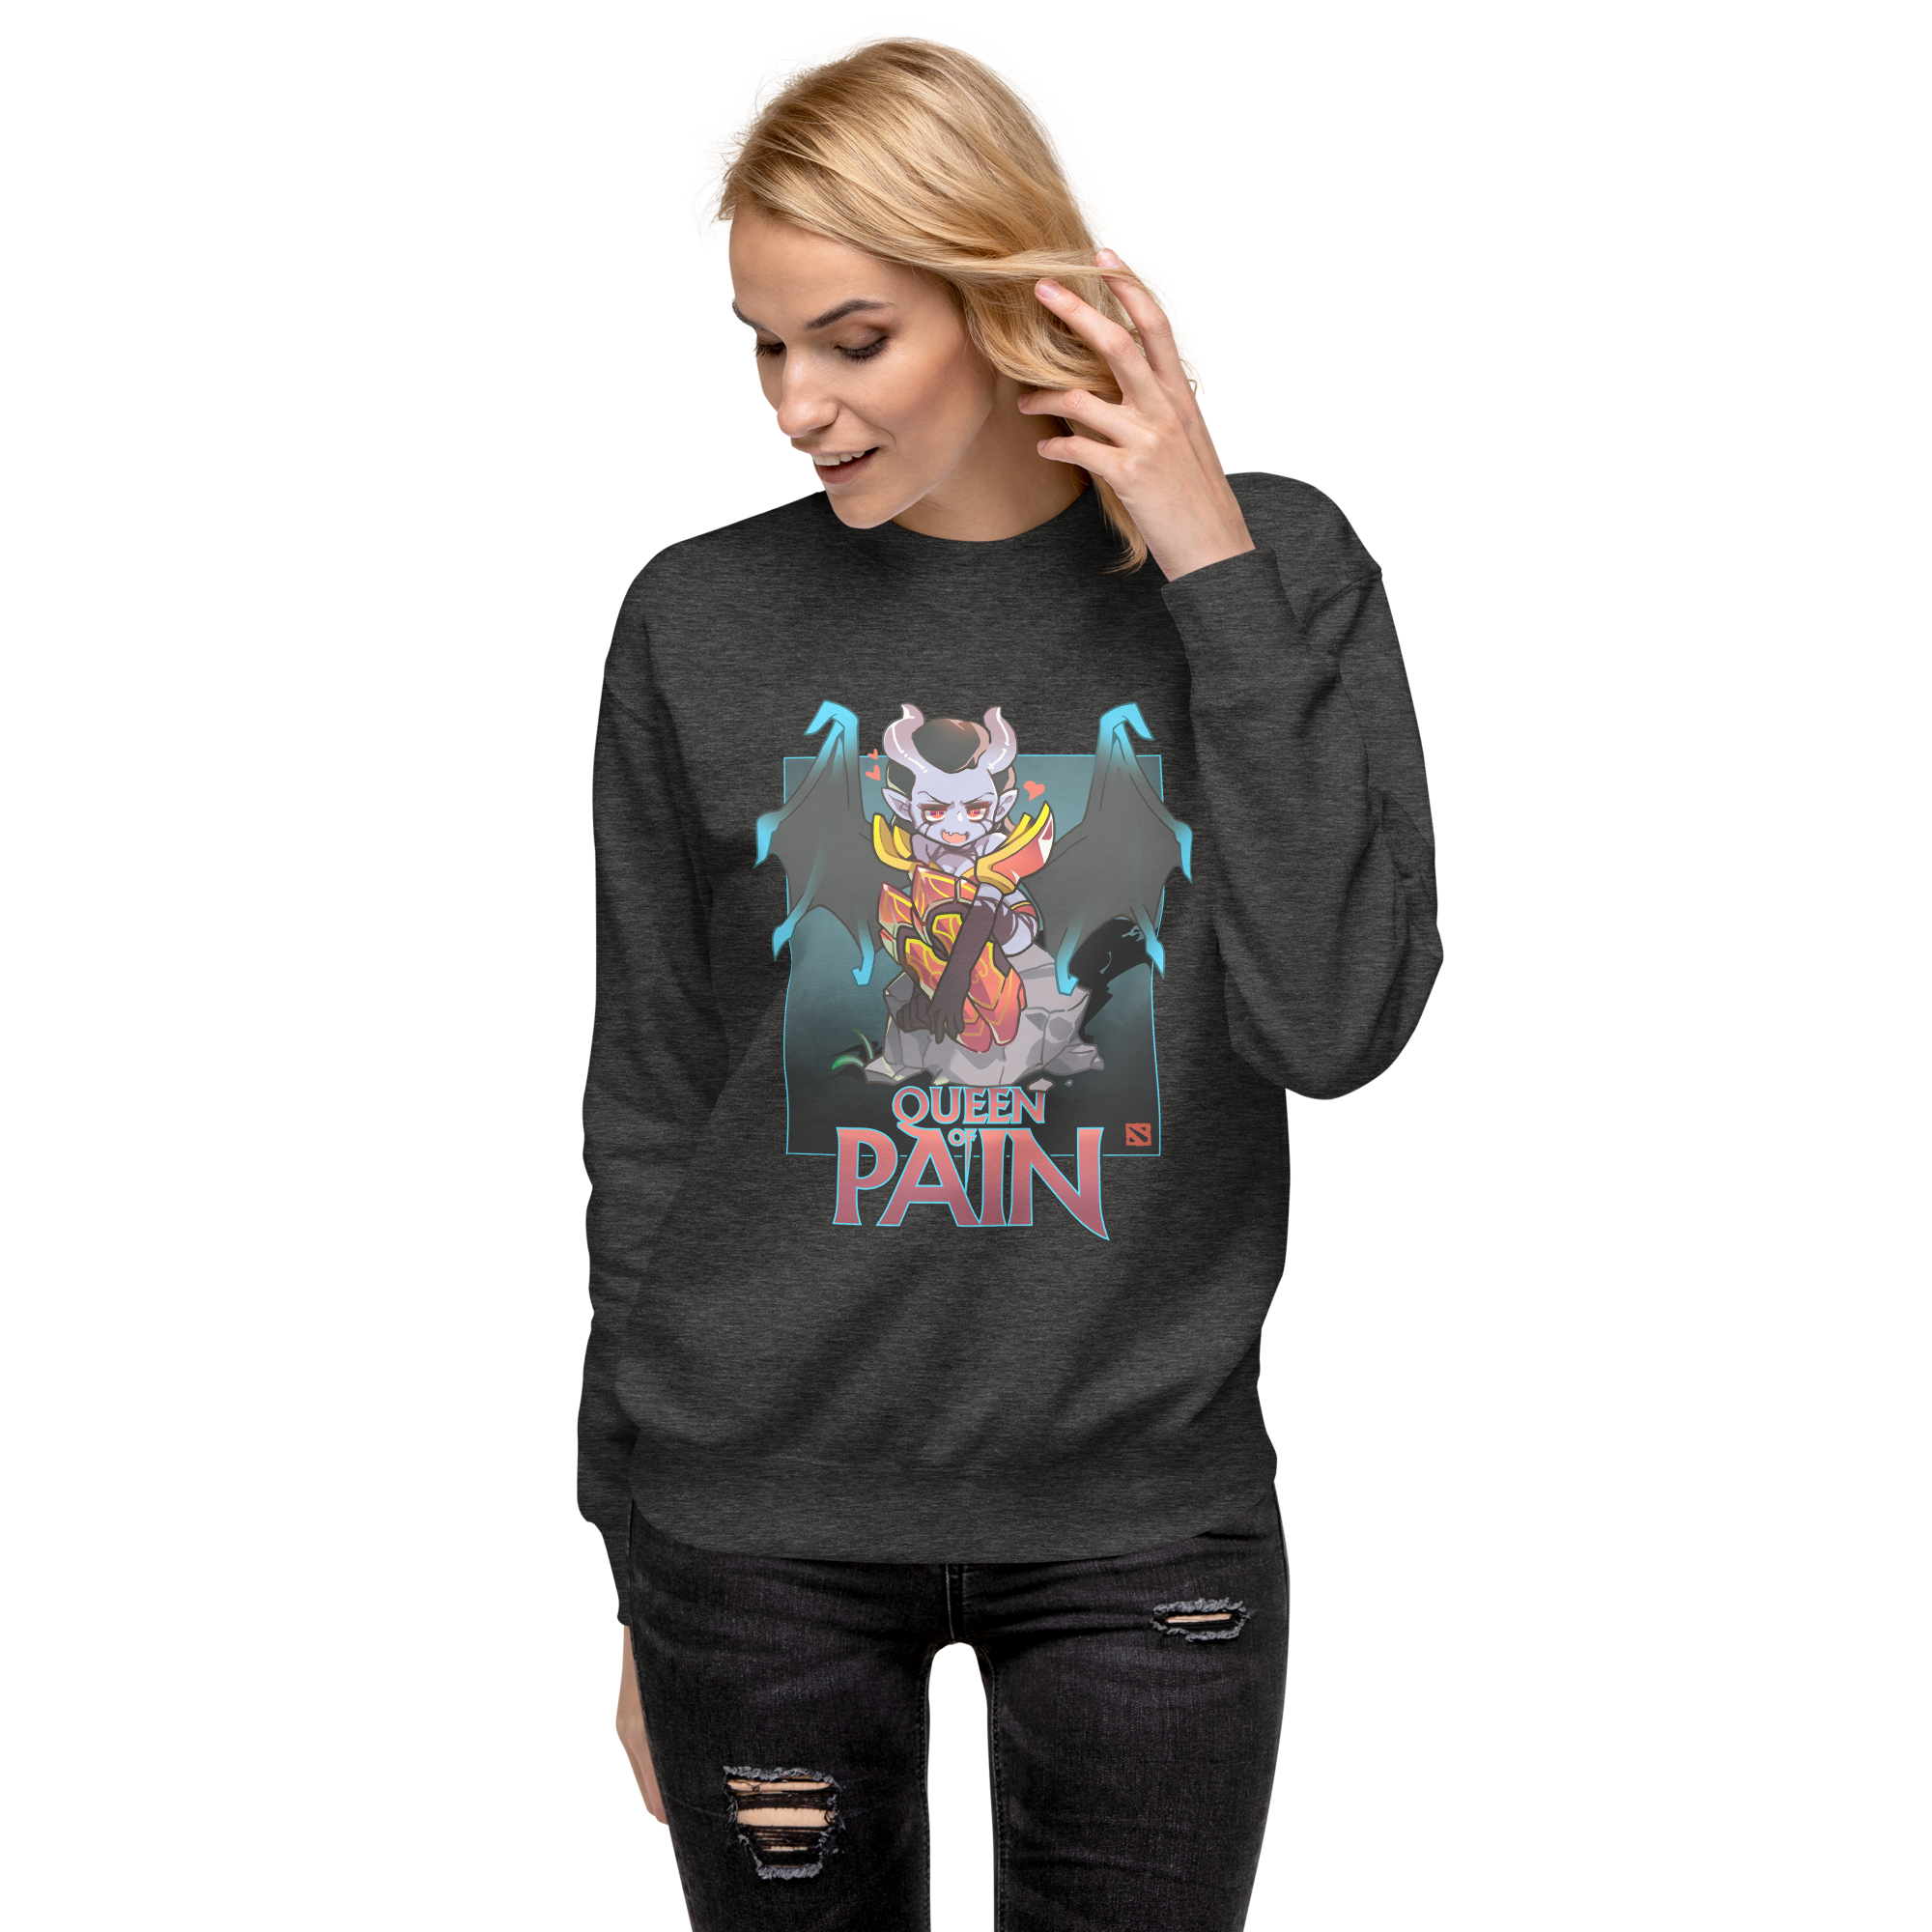 Queen of Pain Sweatshirt - Charocal